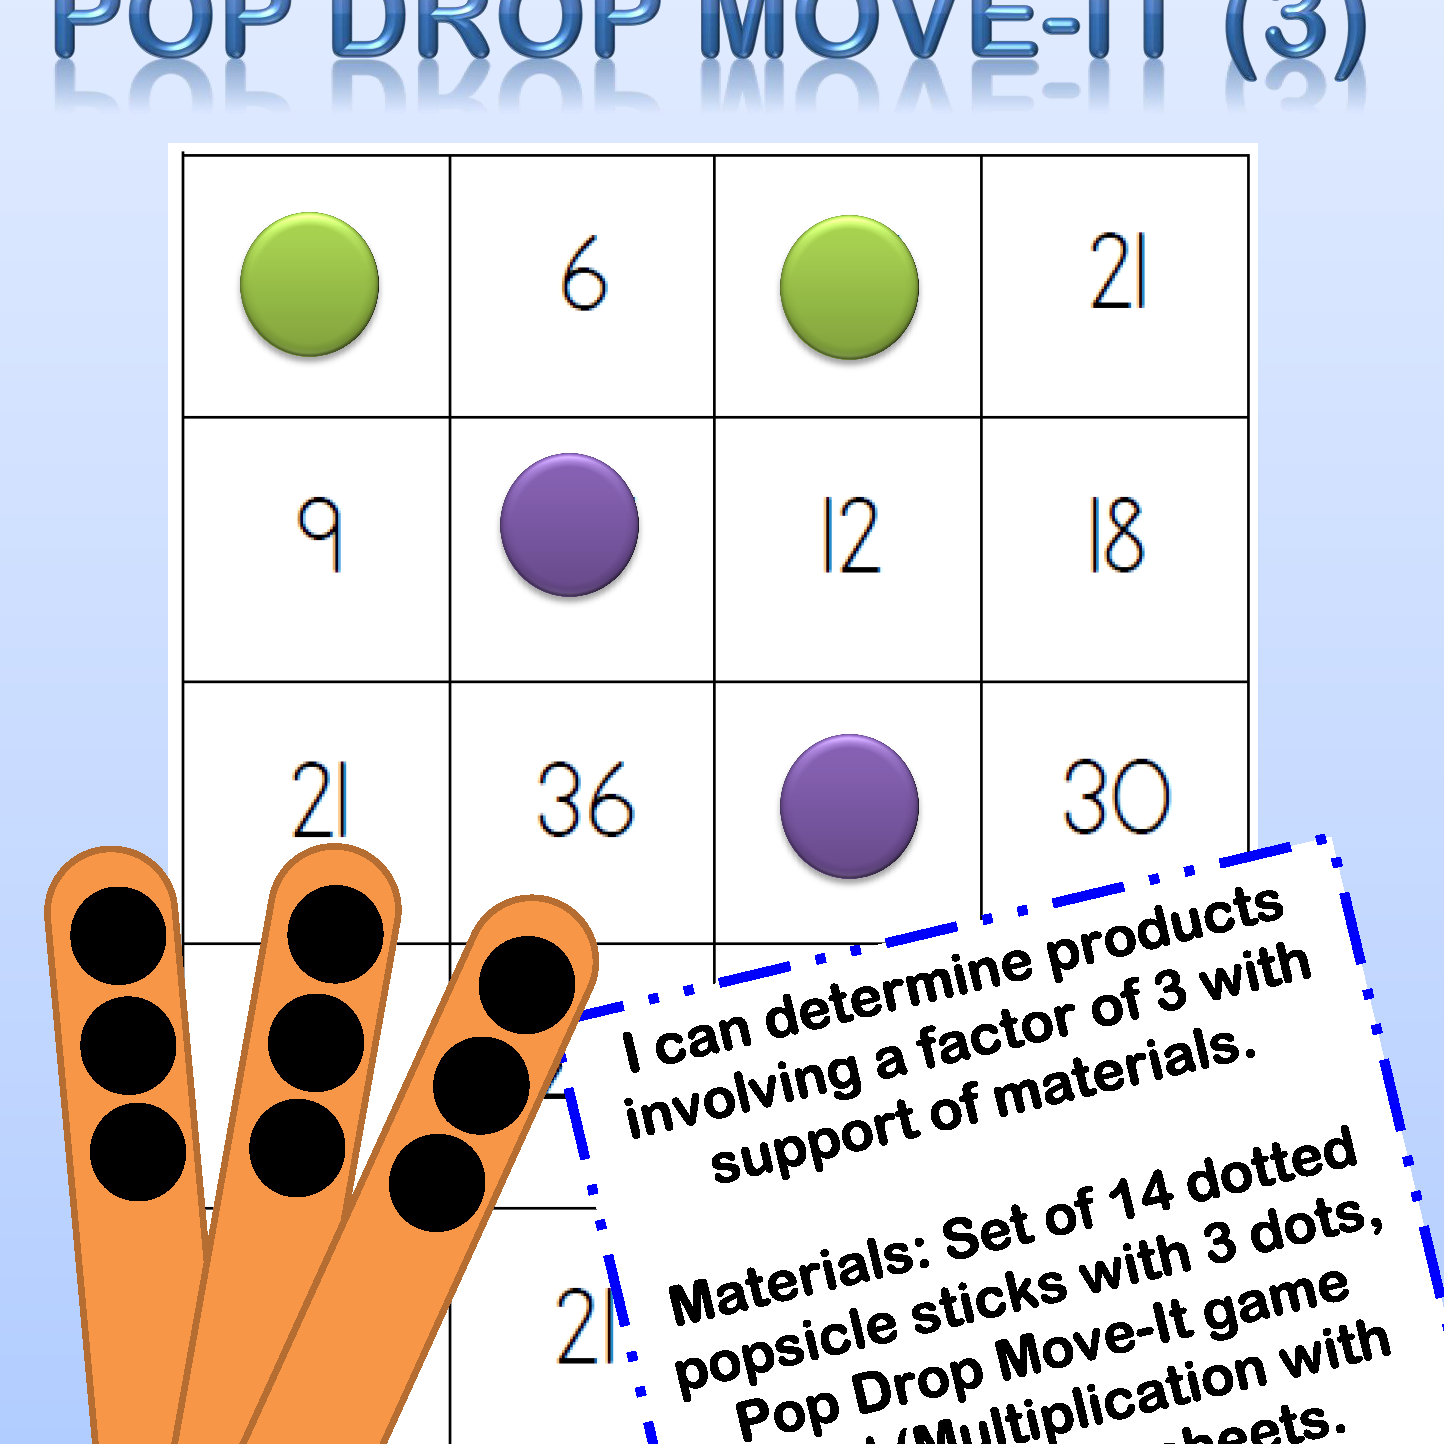 pop drop move-it 3's